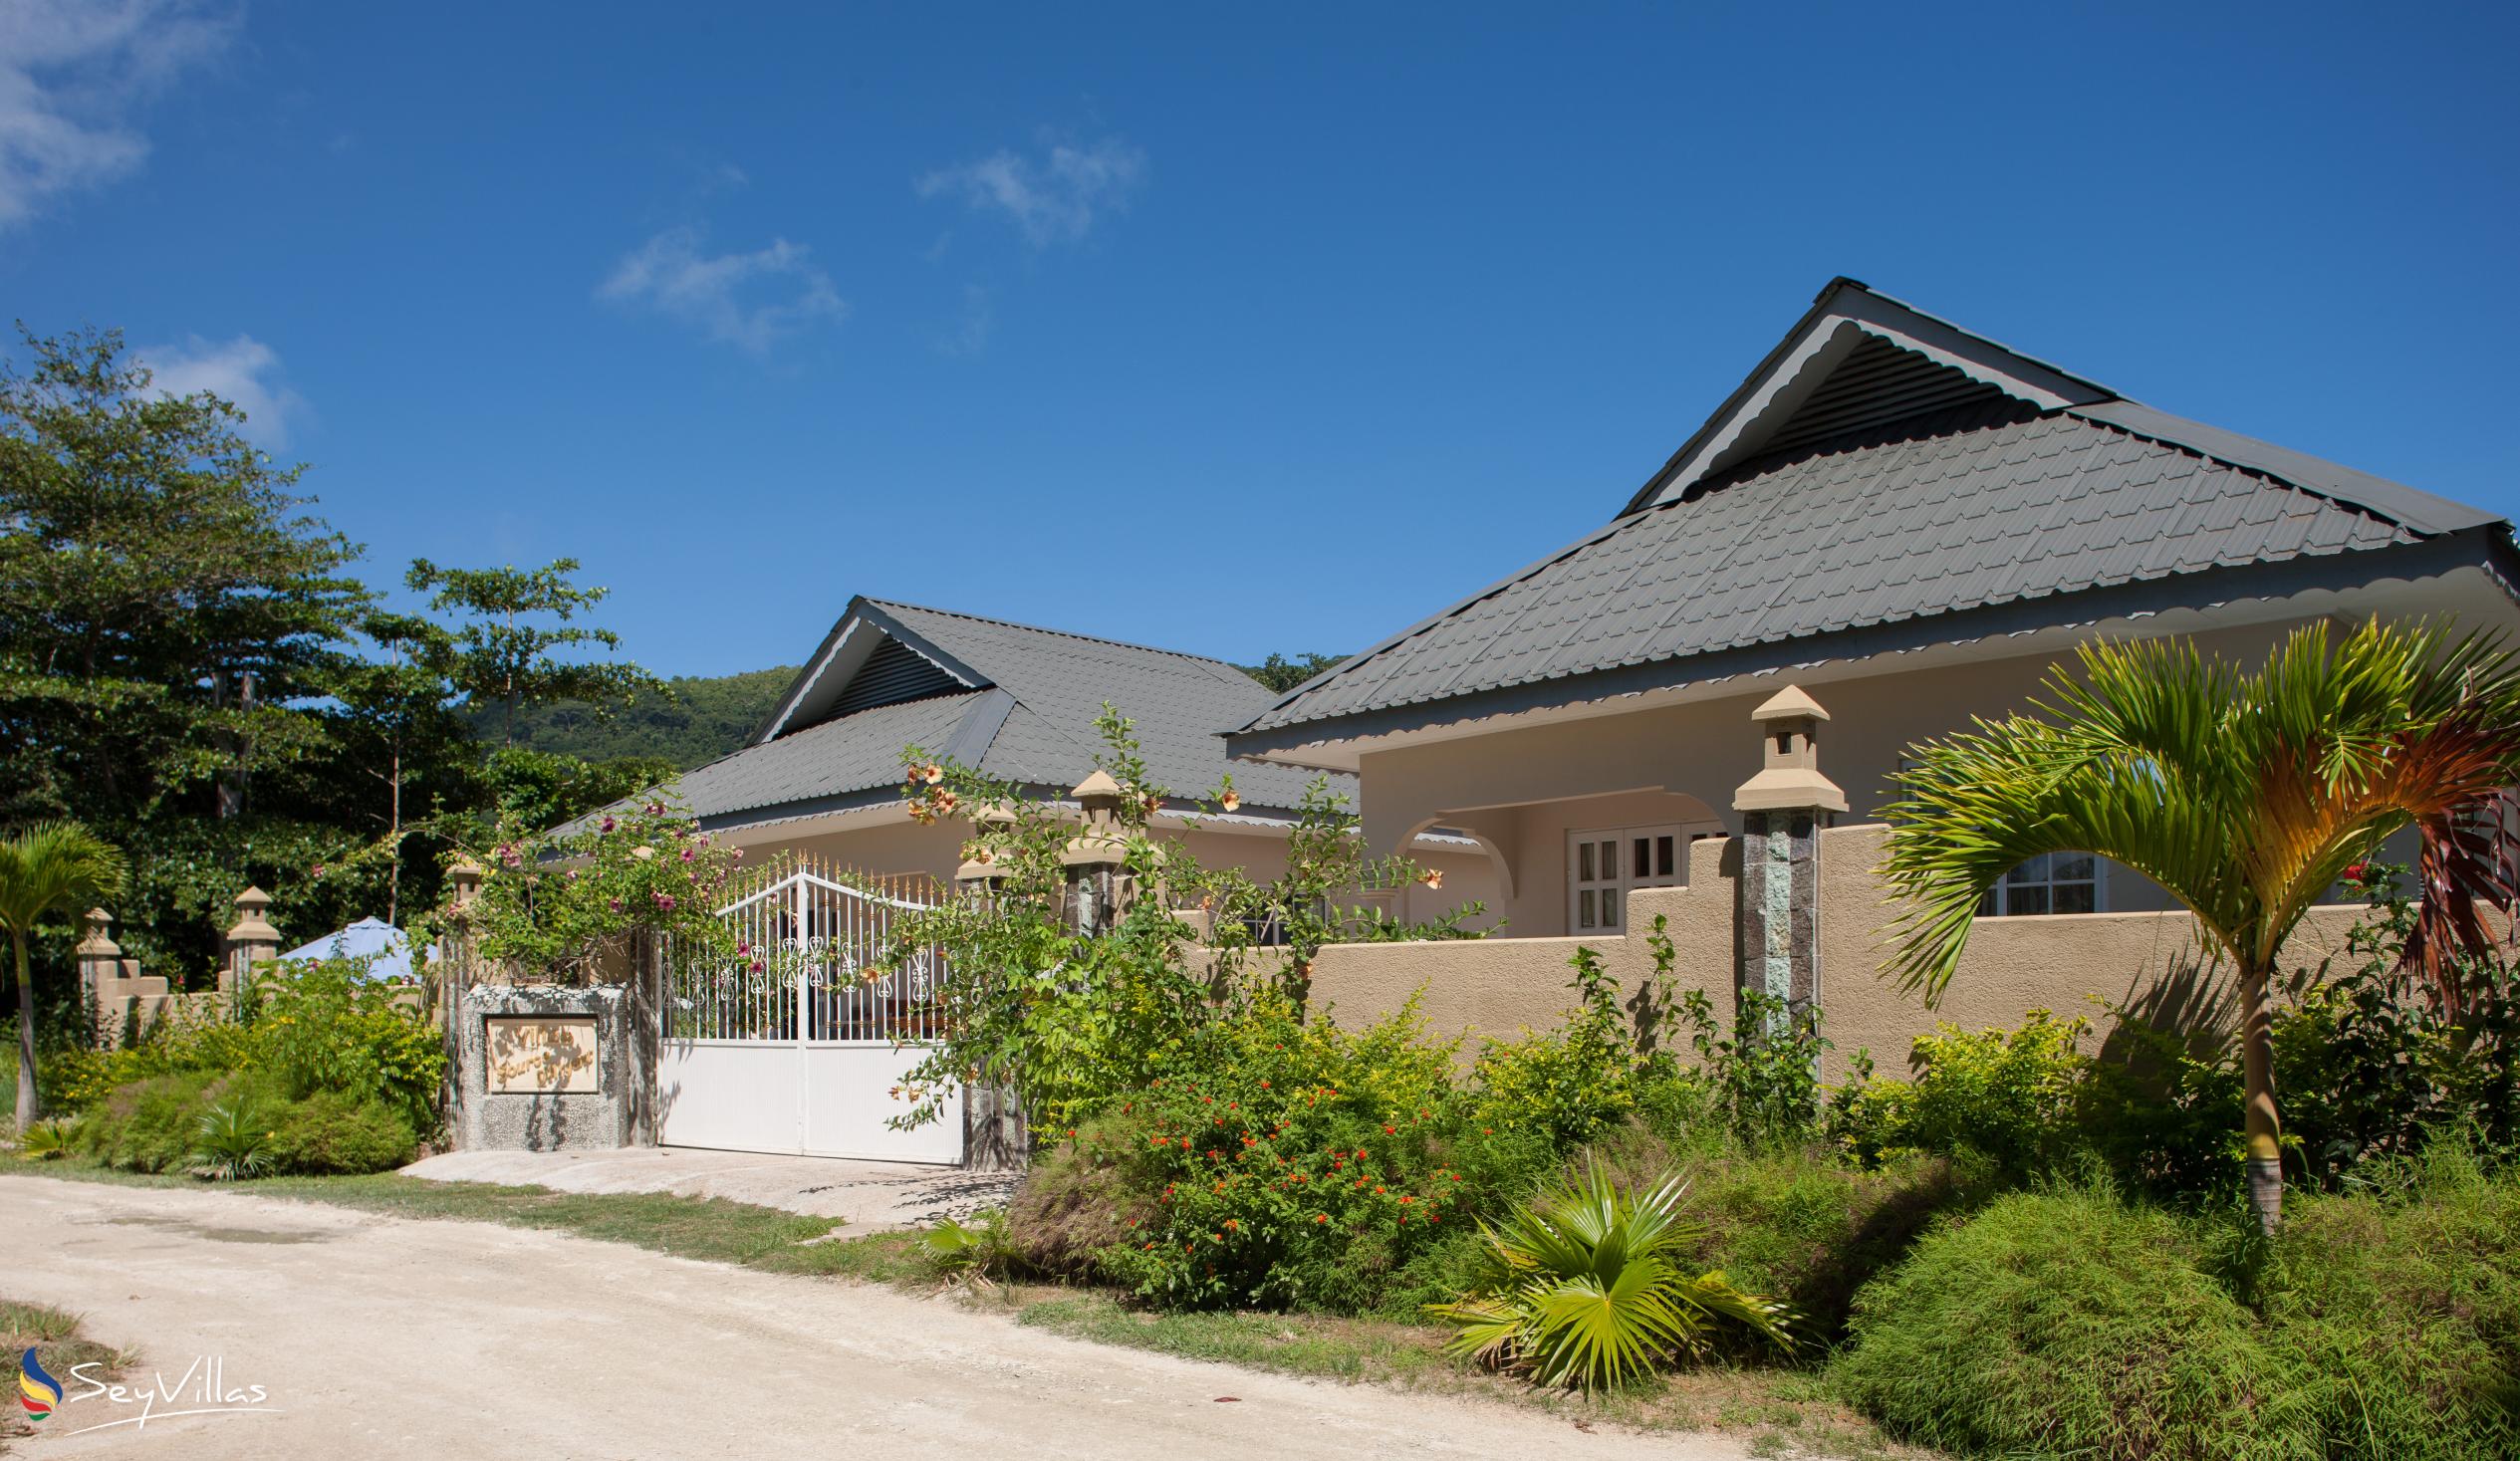 Foto 4: Villa Source D'Argent - Esterno - La Digue (Seychelles)